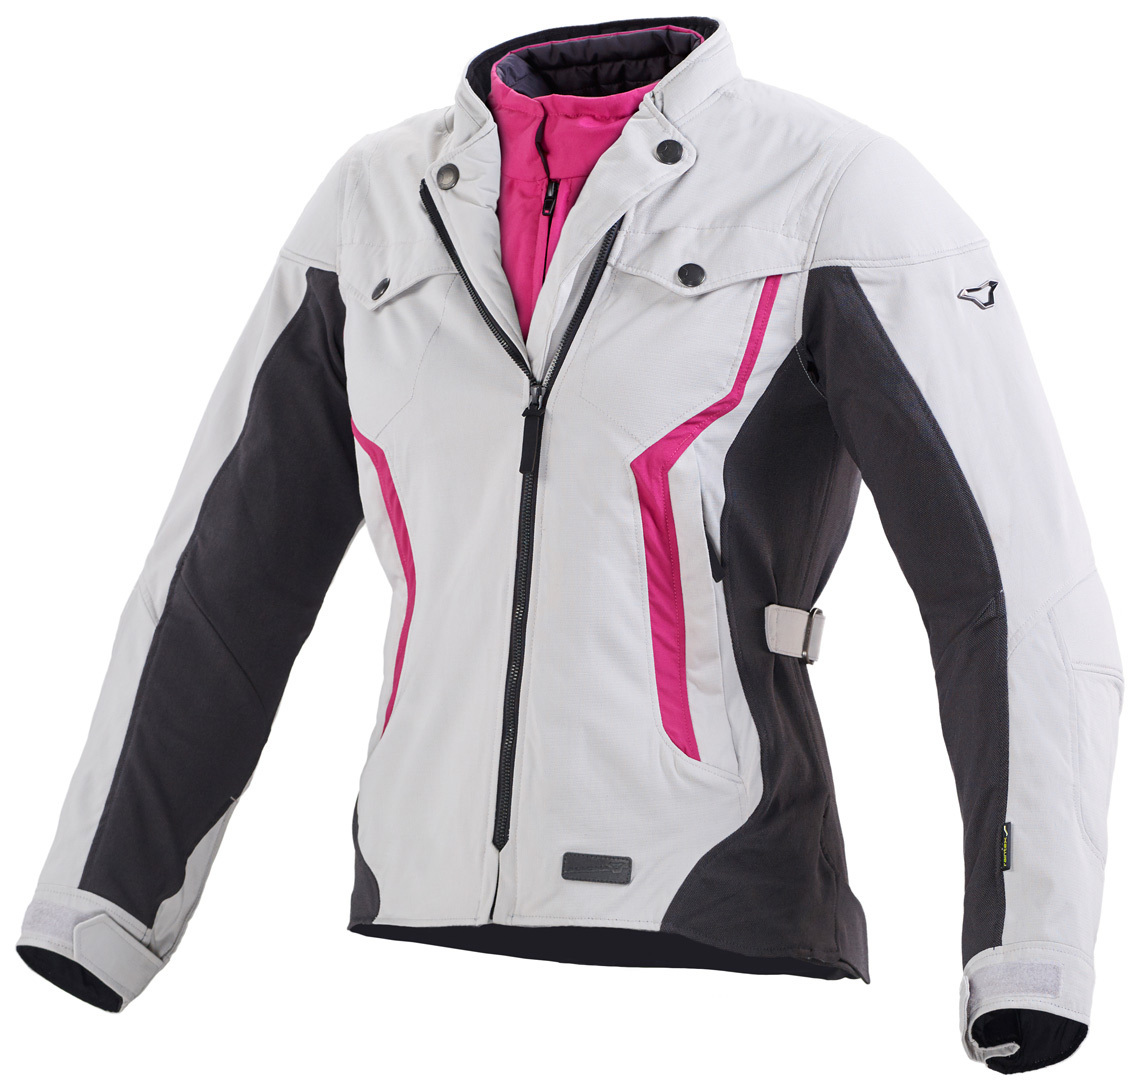 Macna Impala Textile Jacket, black-white-pink, Size M, black-white-pink, Size M